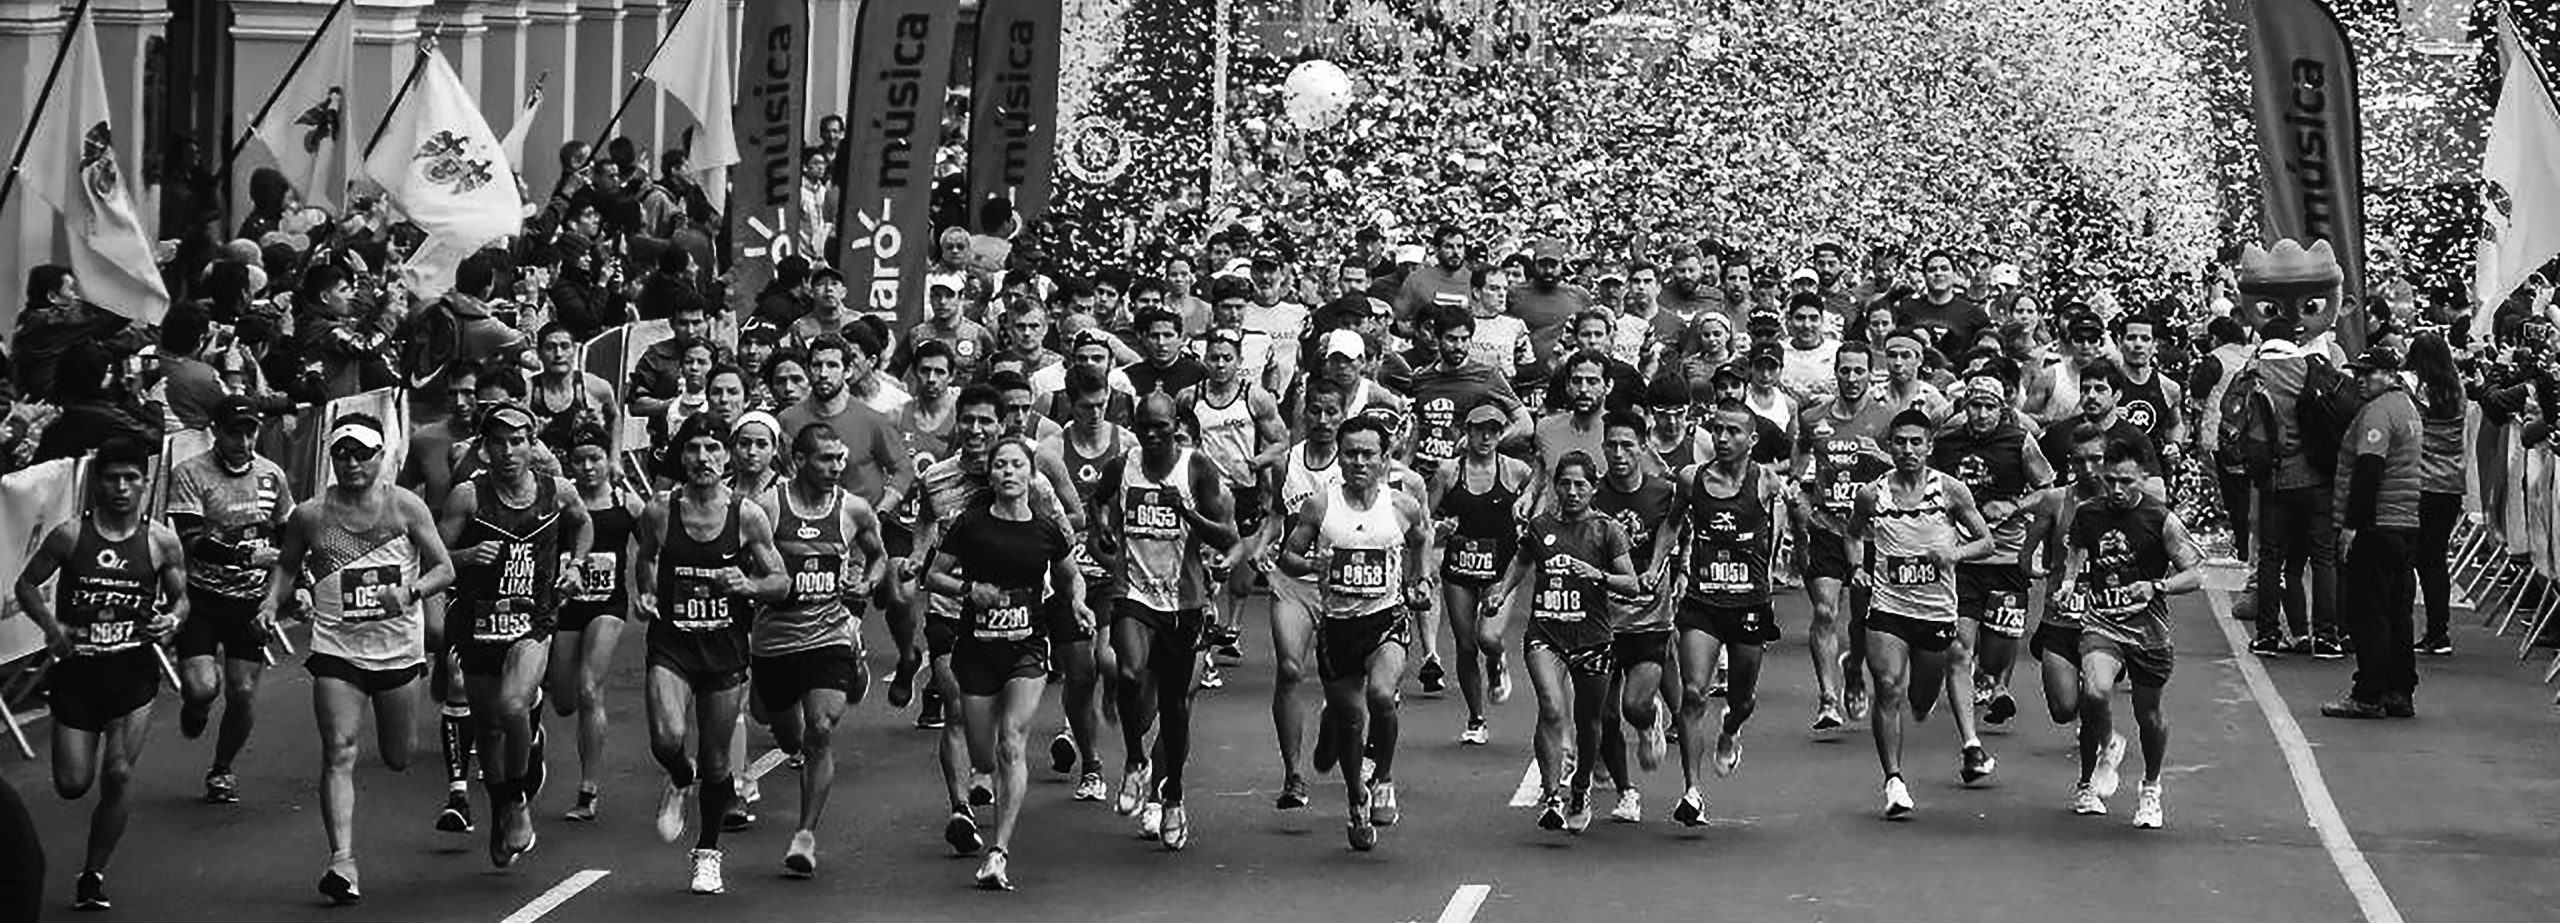 Media Maratón de Lima 2019 celebra edición #110